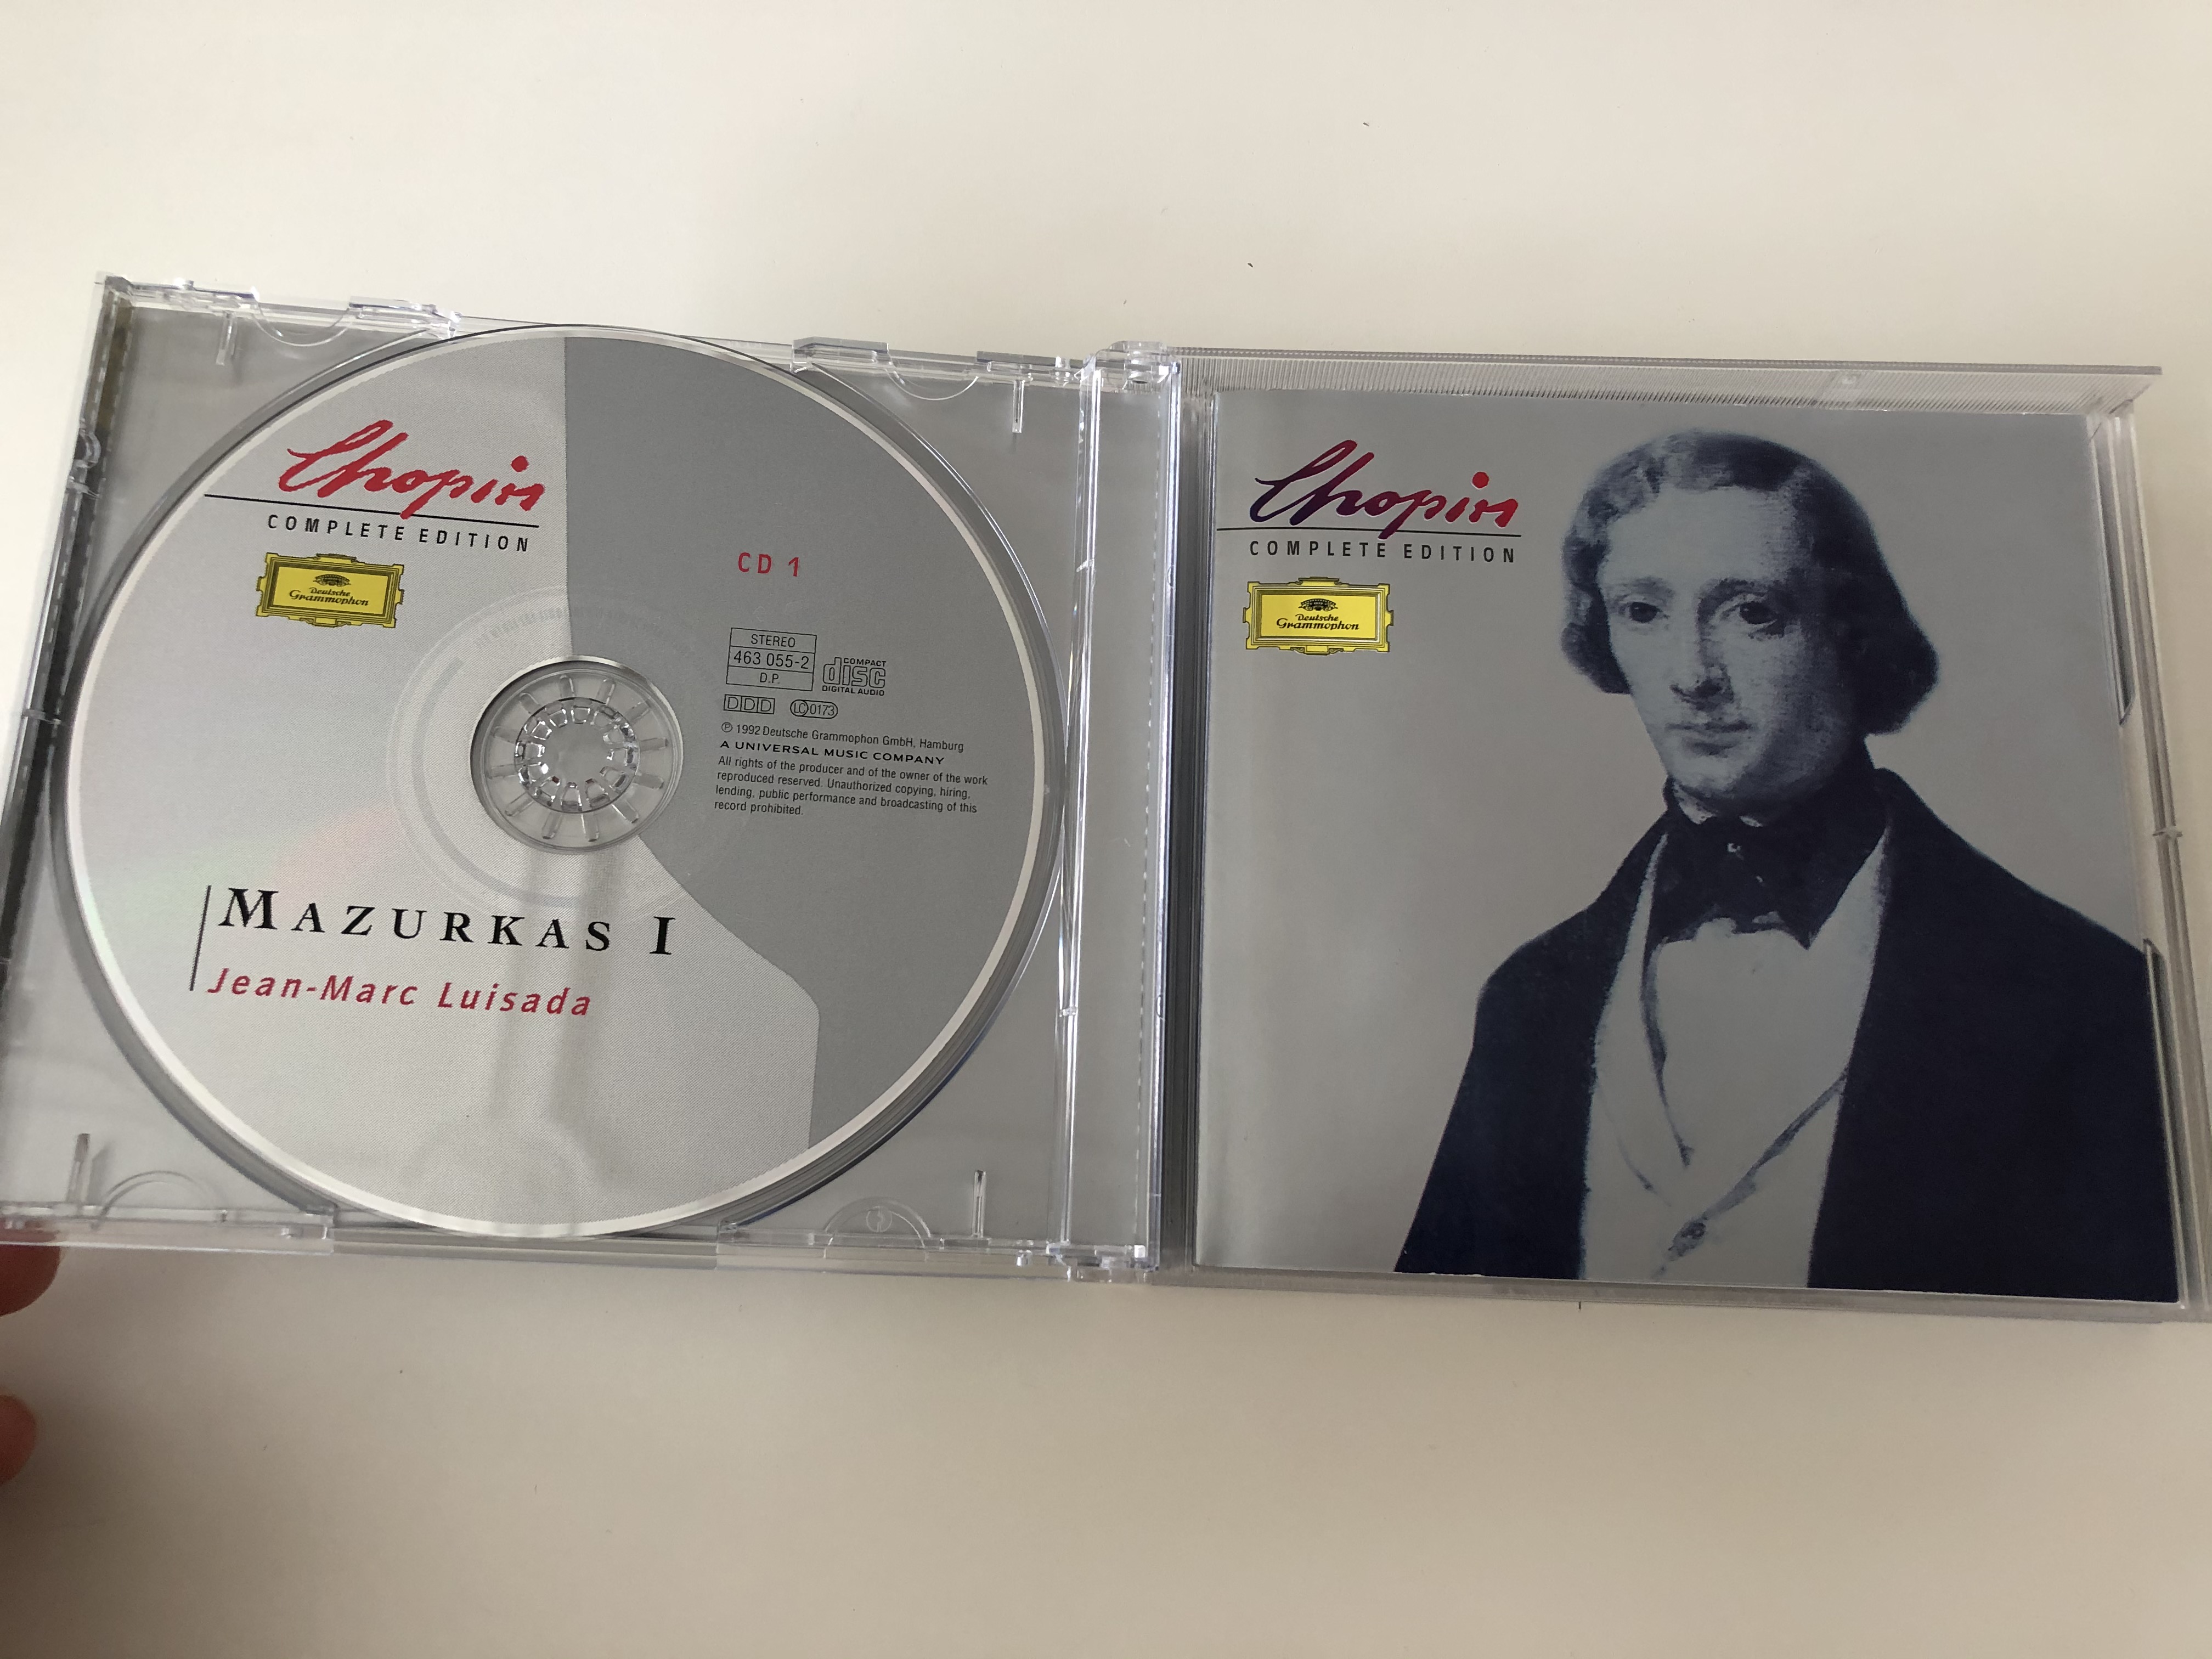 chopin-complete-edition-vol-iii-mazurkas-jean-marc-luisada-lilya-zilberstein-deutsche-grammophon-2x-audio-cd-stereo-463-054-2-2-.jpg